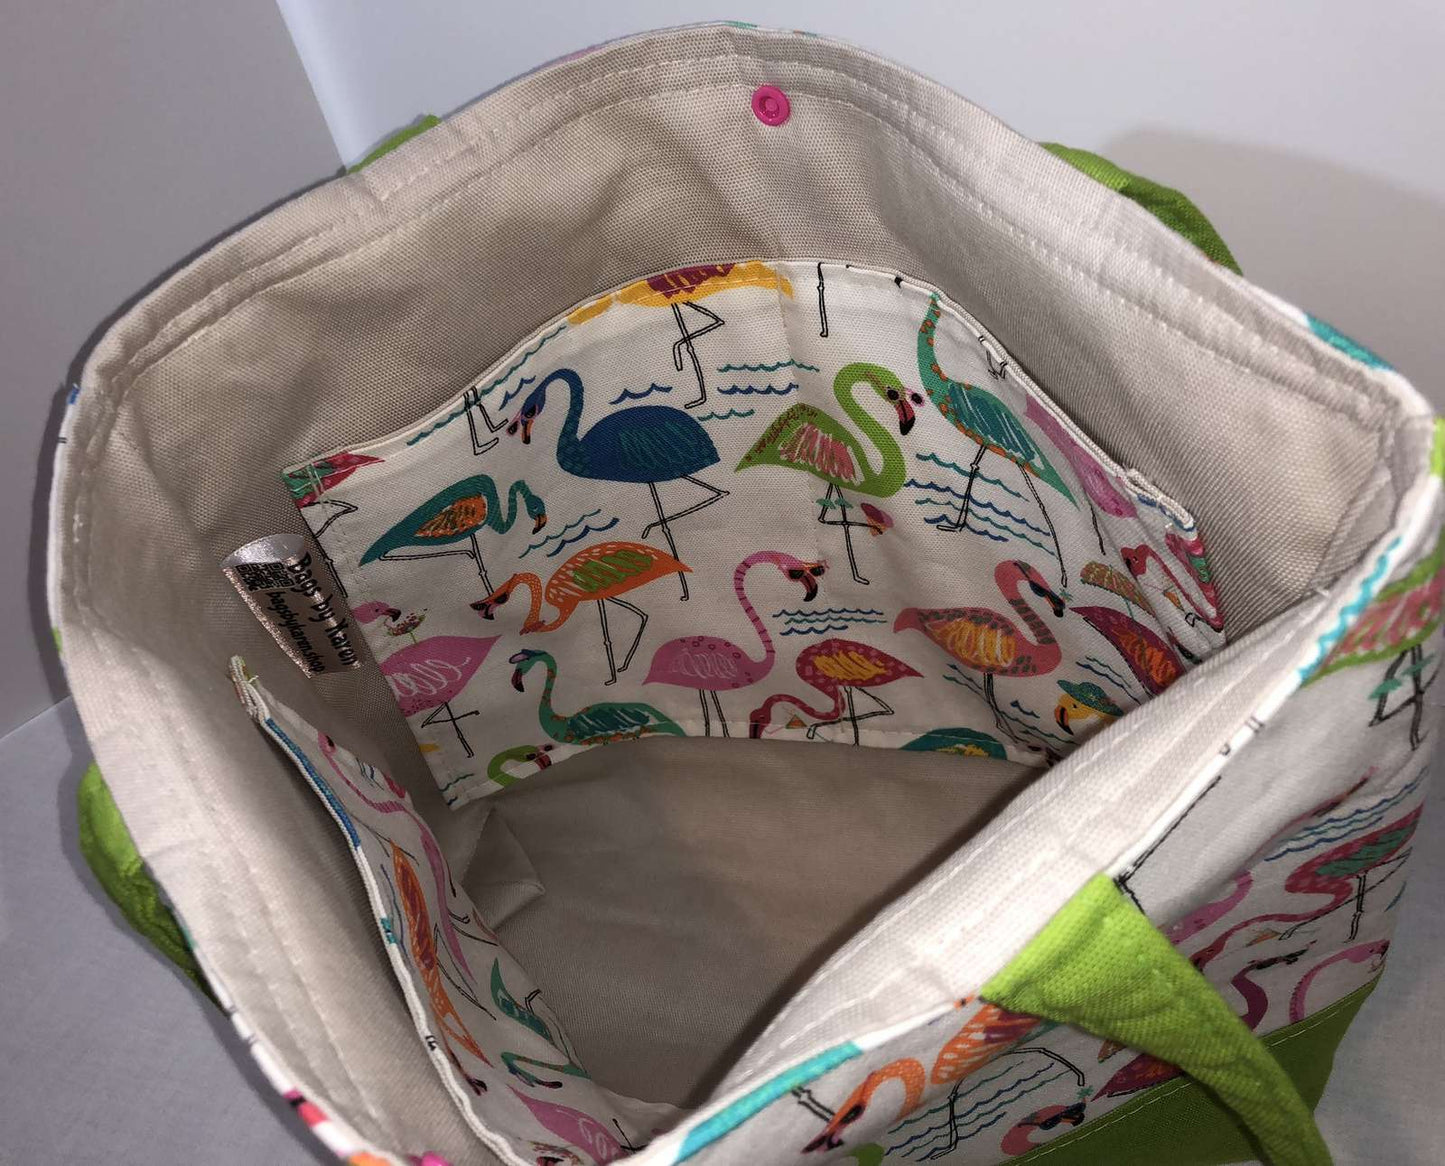 Island Flamingos Shoulder Bag Purse Tropical Birds Beach Vacation Handbag Tote with Wristlet Key FOB